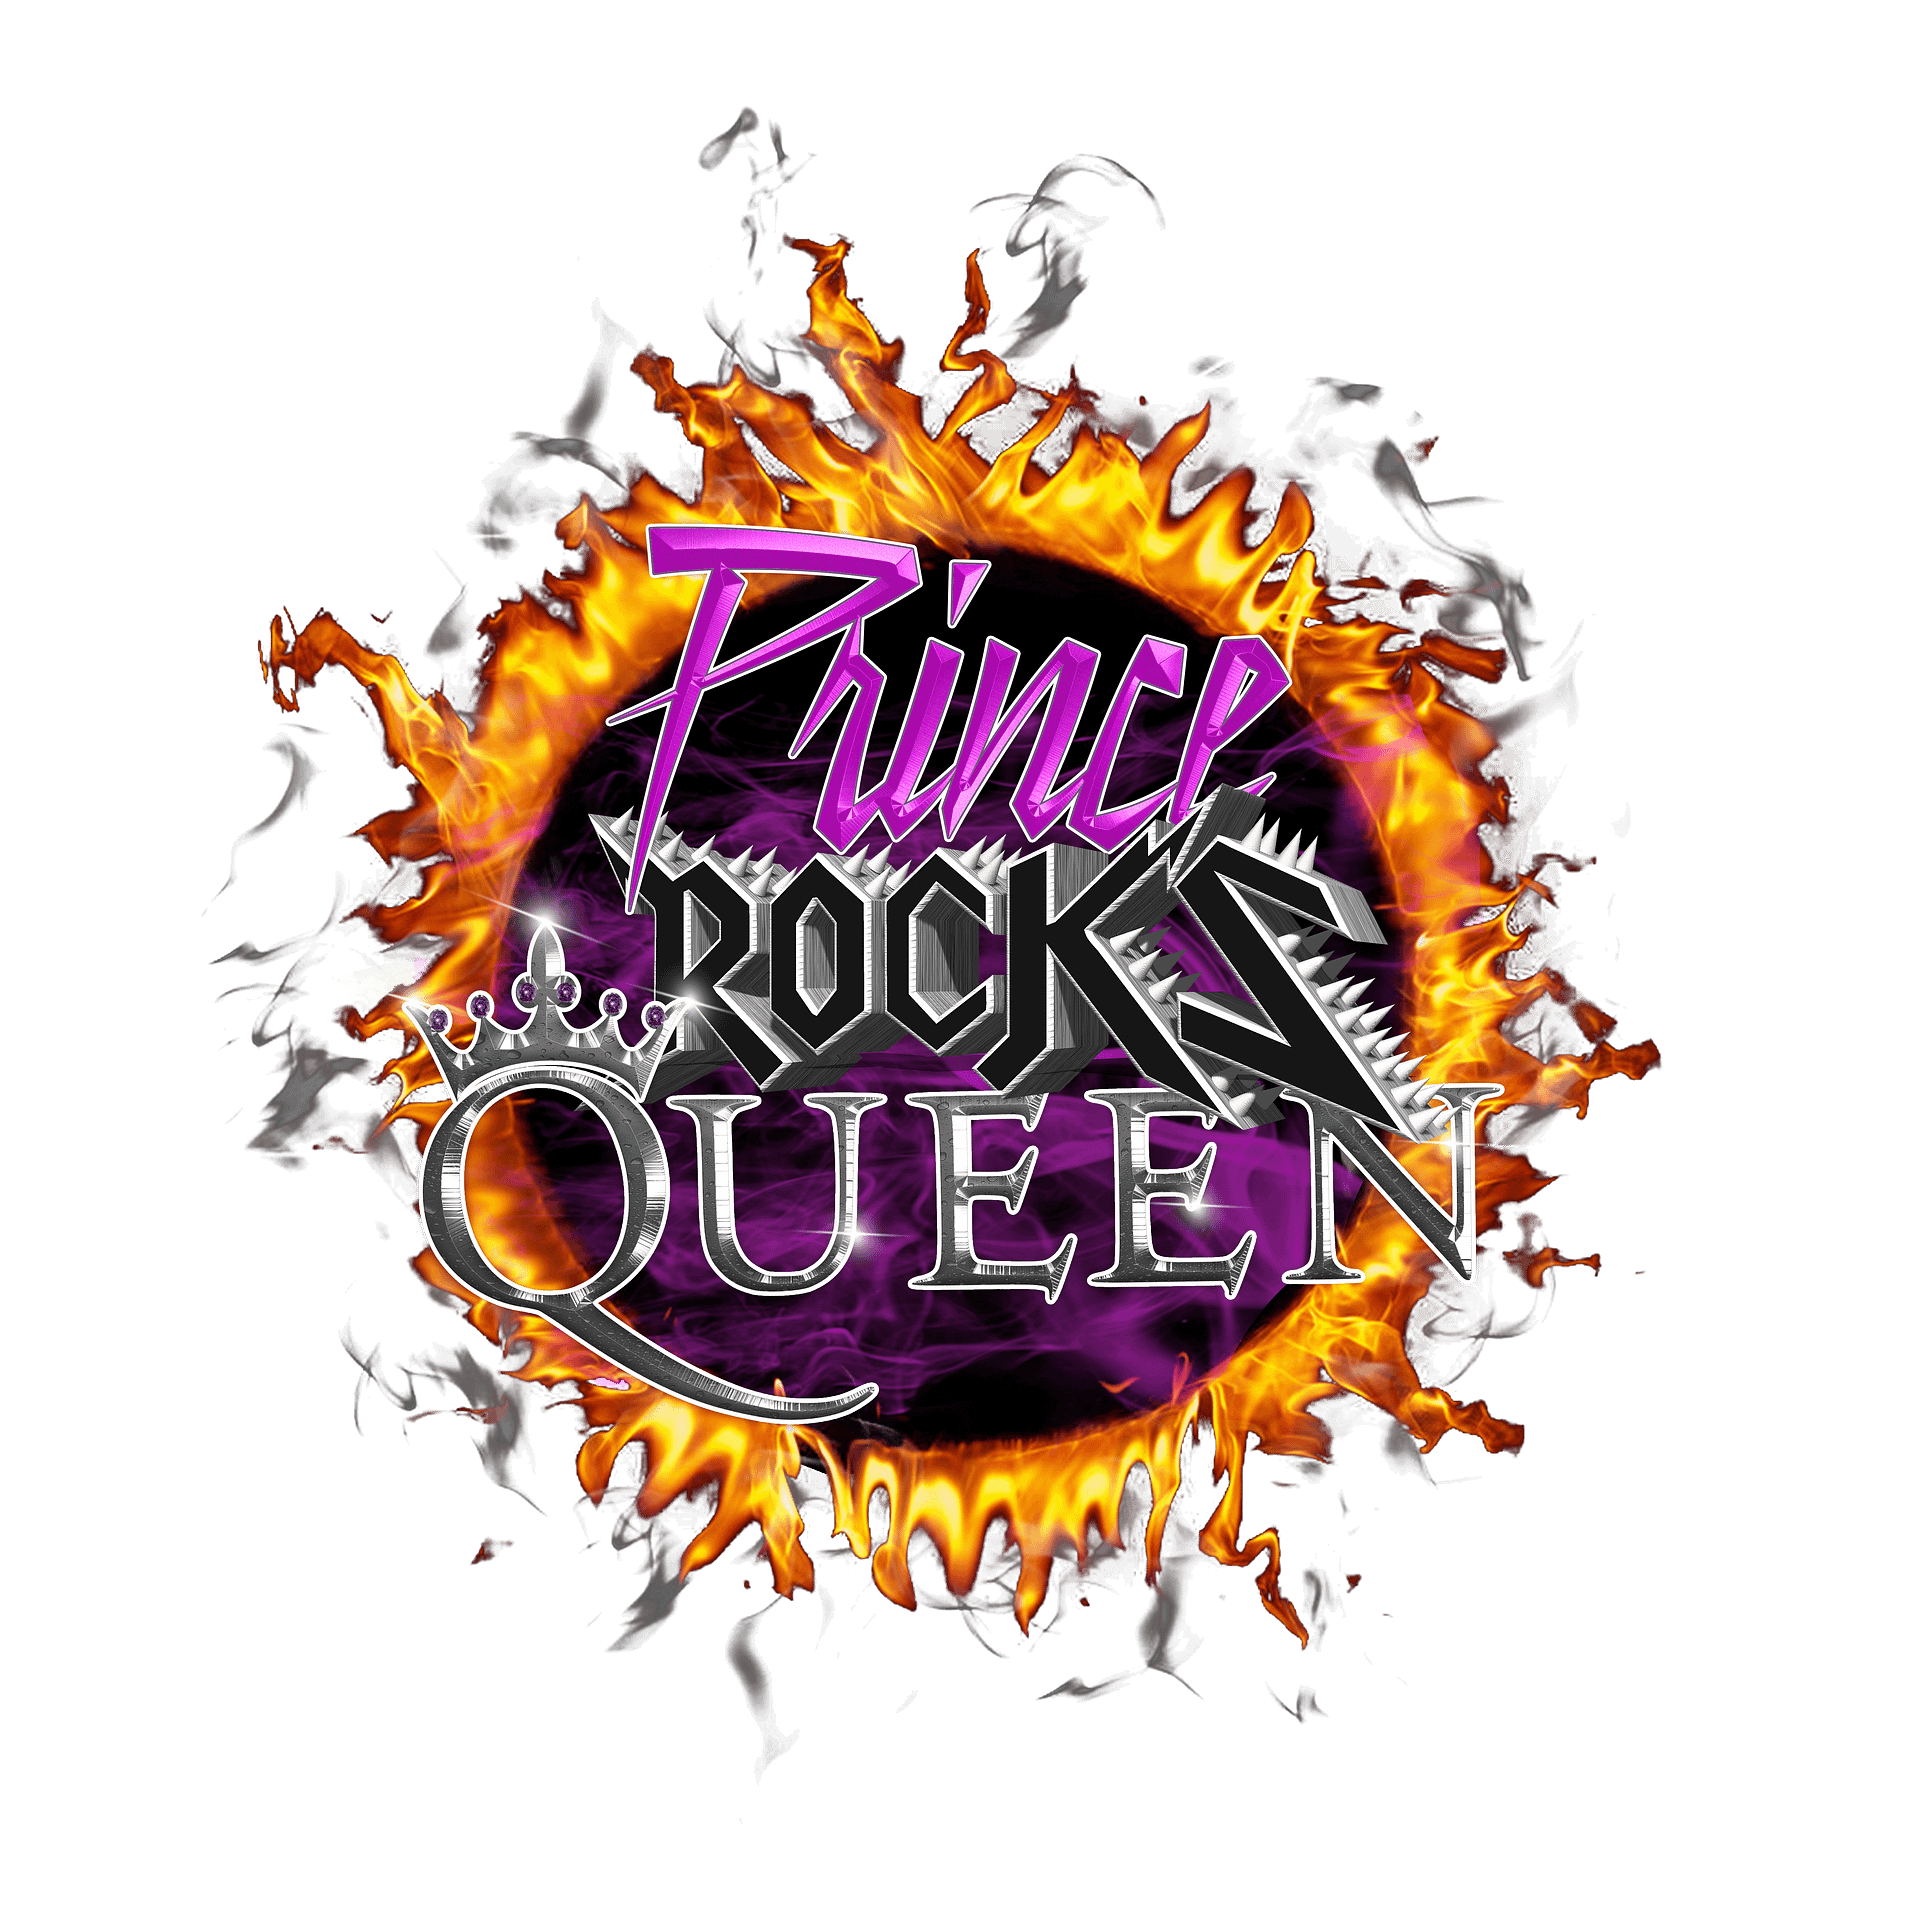 Price Rocks Queen3